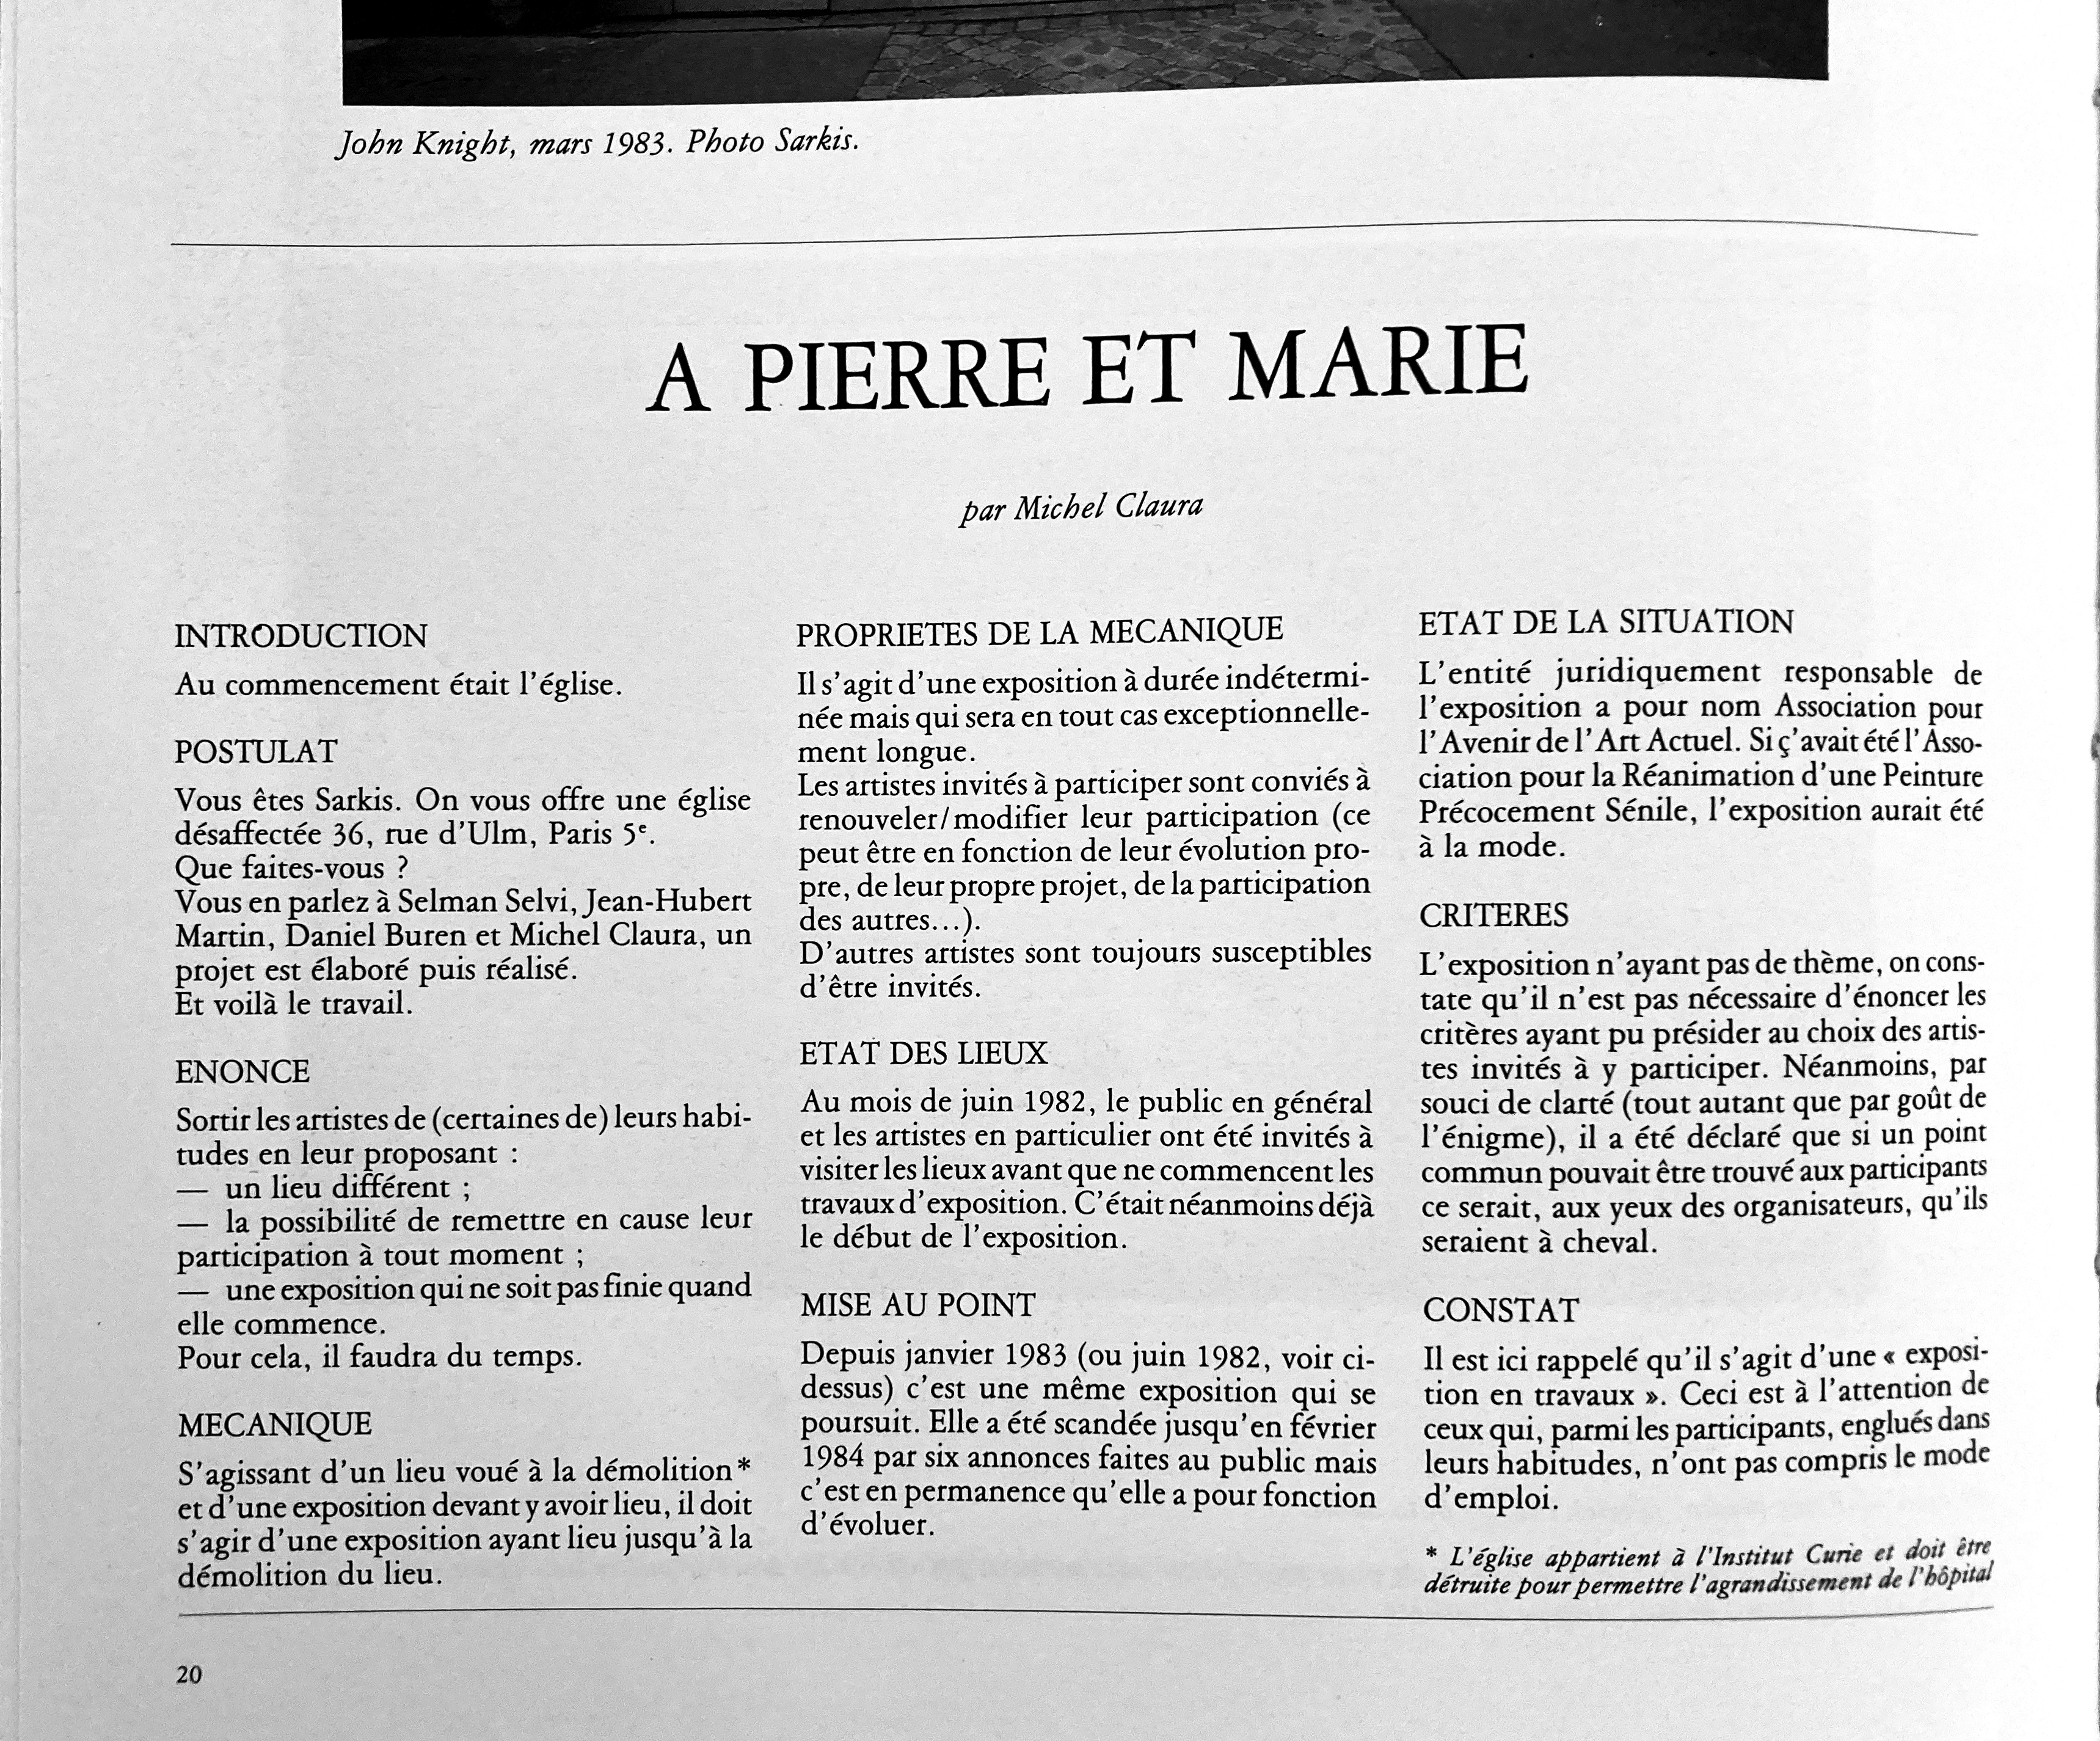 Michel Claura, A Pierre et Marie, une exposition en travaux, Revue Public n°1
© DR